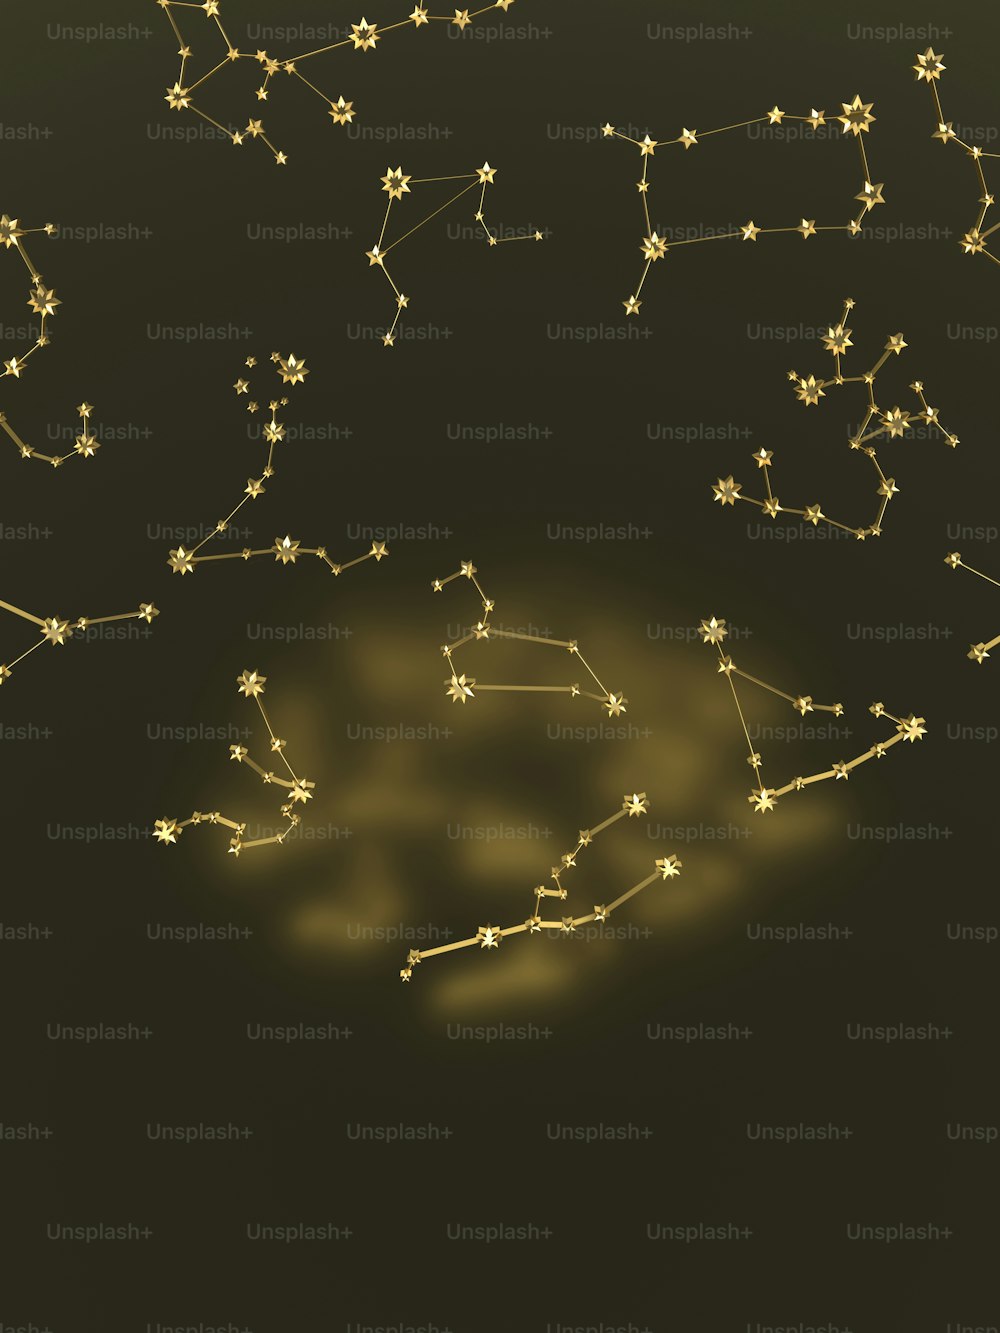 Uma imagem do signo do zodíaco em ouro em um fundo preto